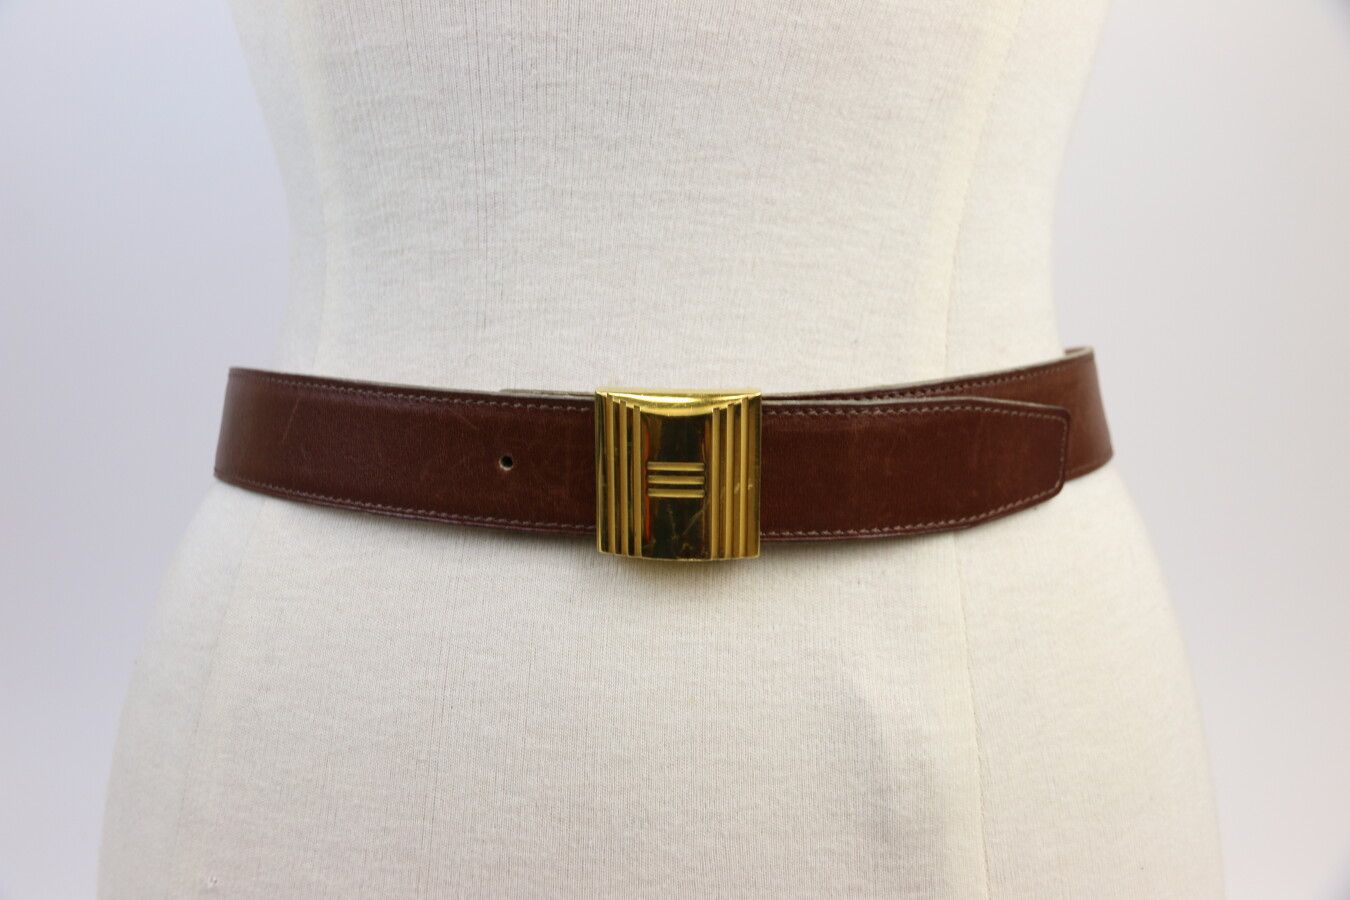 Null HERMES 

Cinturón de cuero leonado con hebilla de metal dorado 

L. 90 cm

&hellip;